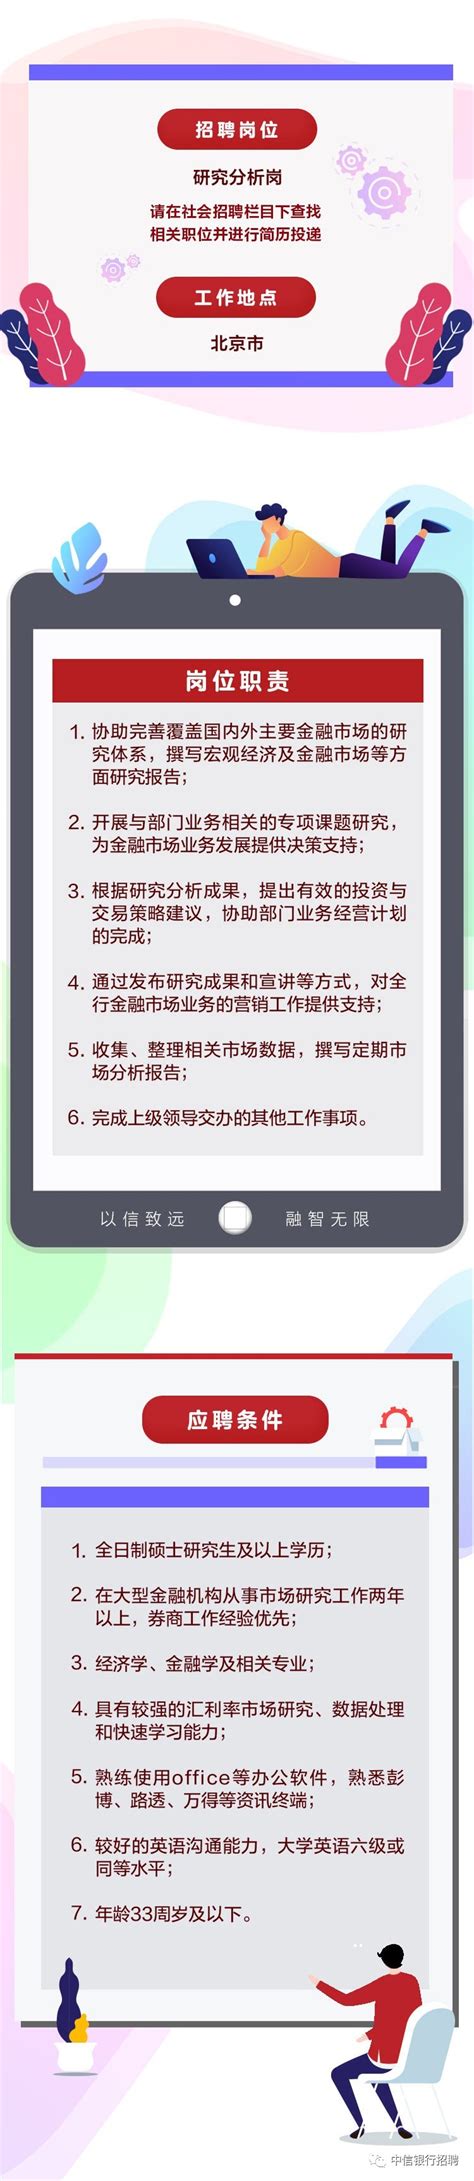 [北京]2019中信银行总行金融市场部社会招聘公告_银行招聘网